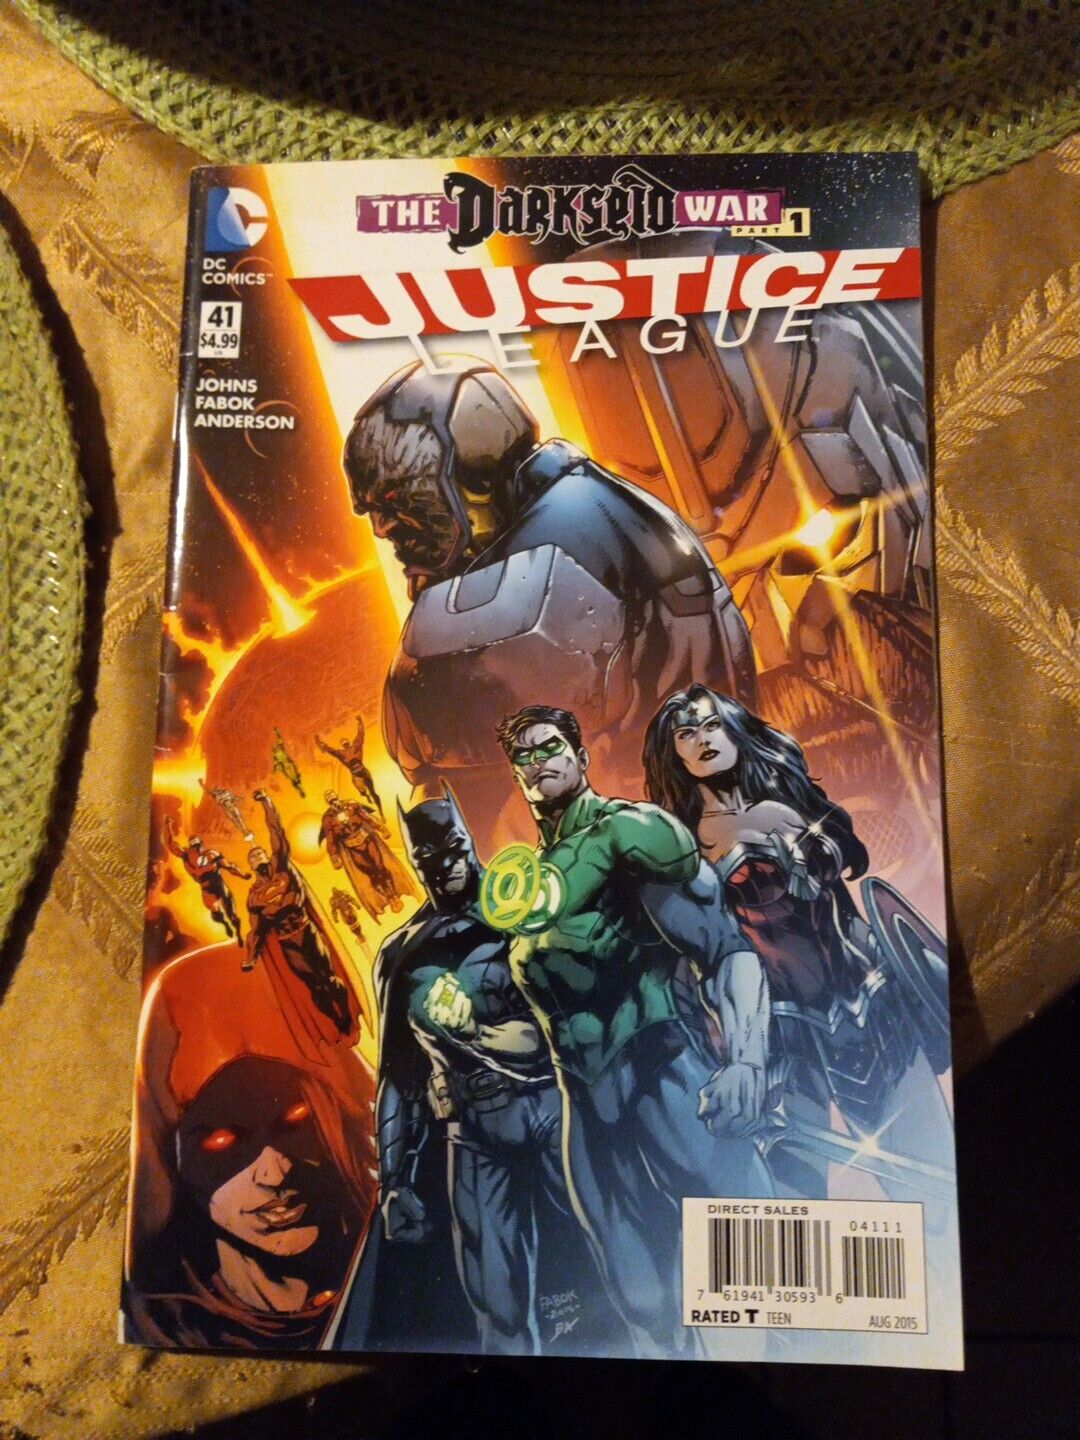 JUSTICE LEAGUE #41, (2015) Darkseid War Part 1 D.C. COMICS (PREOWN) V.G.